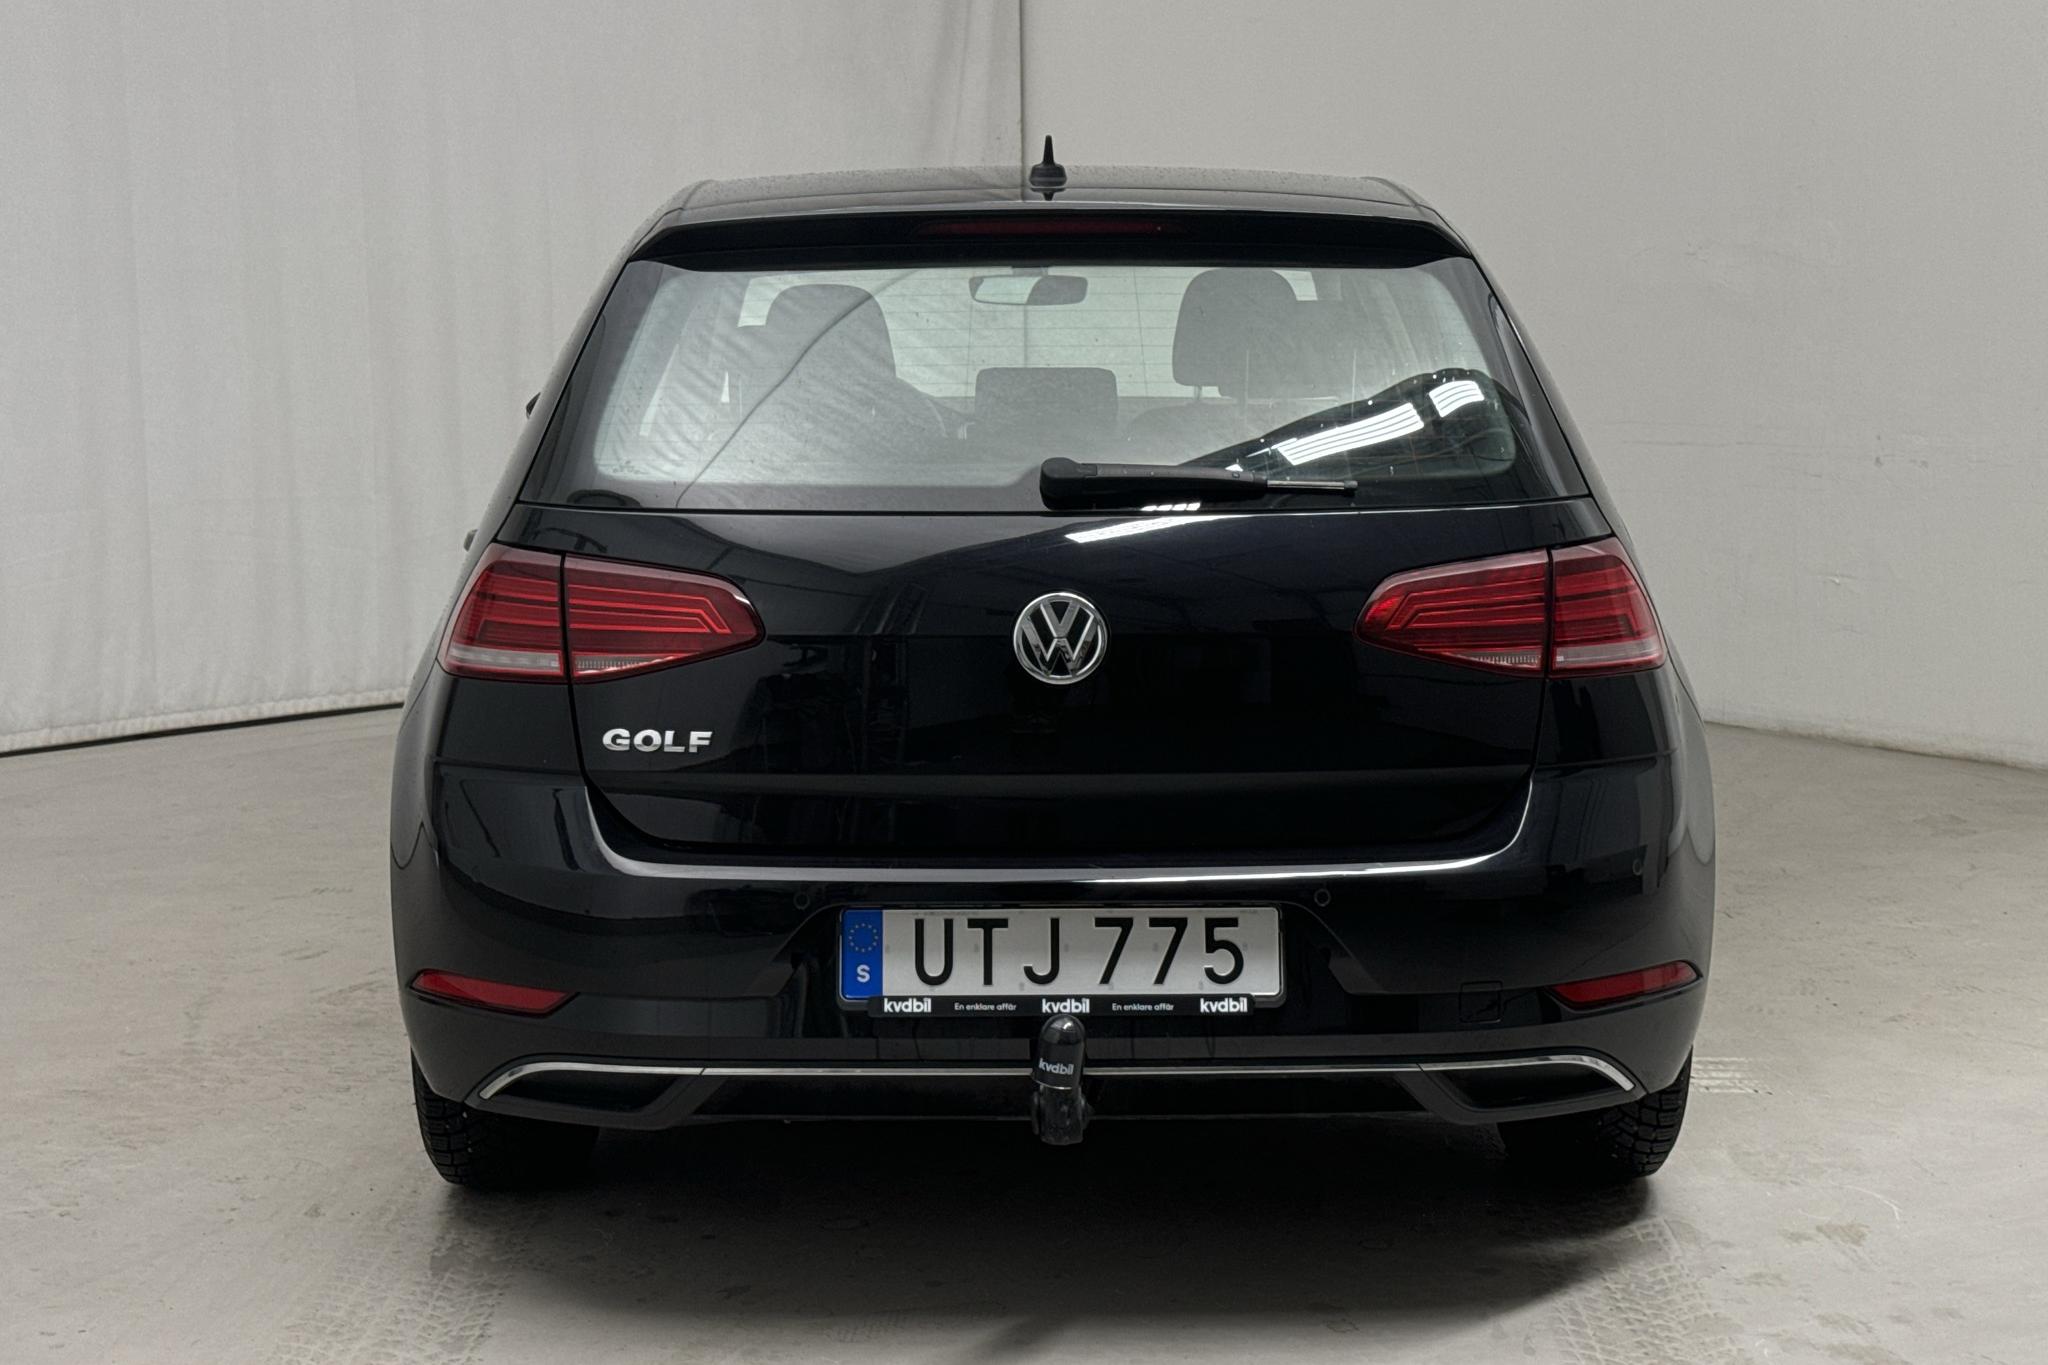 VW Golf VII 1.0 TSI 5dr (115hk) - 175 690 km - Automatyczna - czarny - 2019